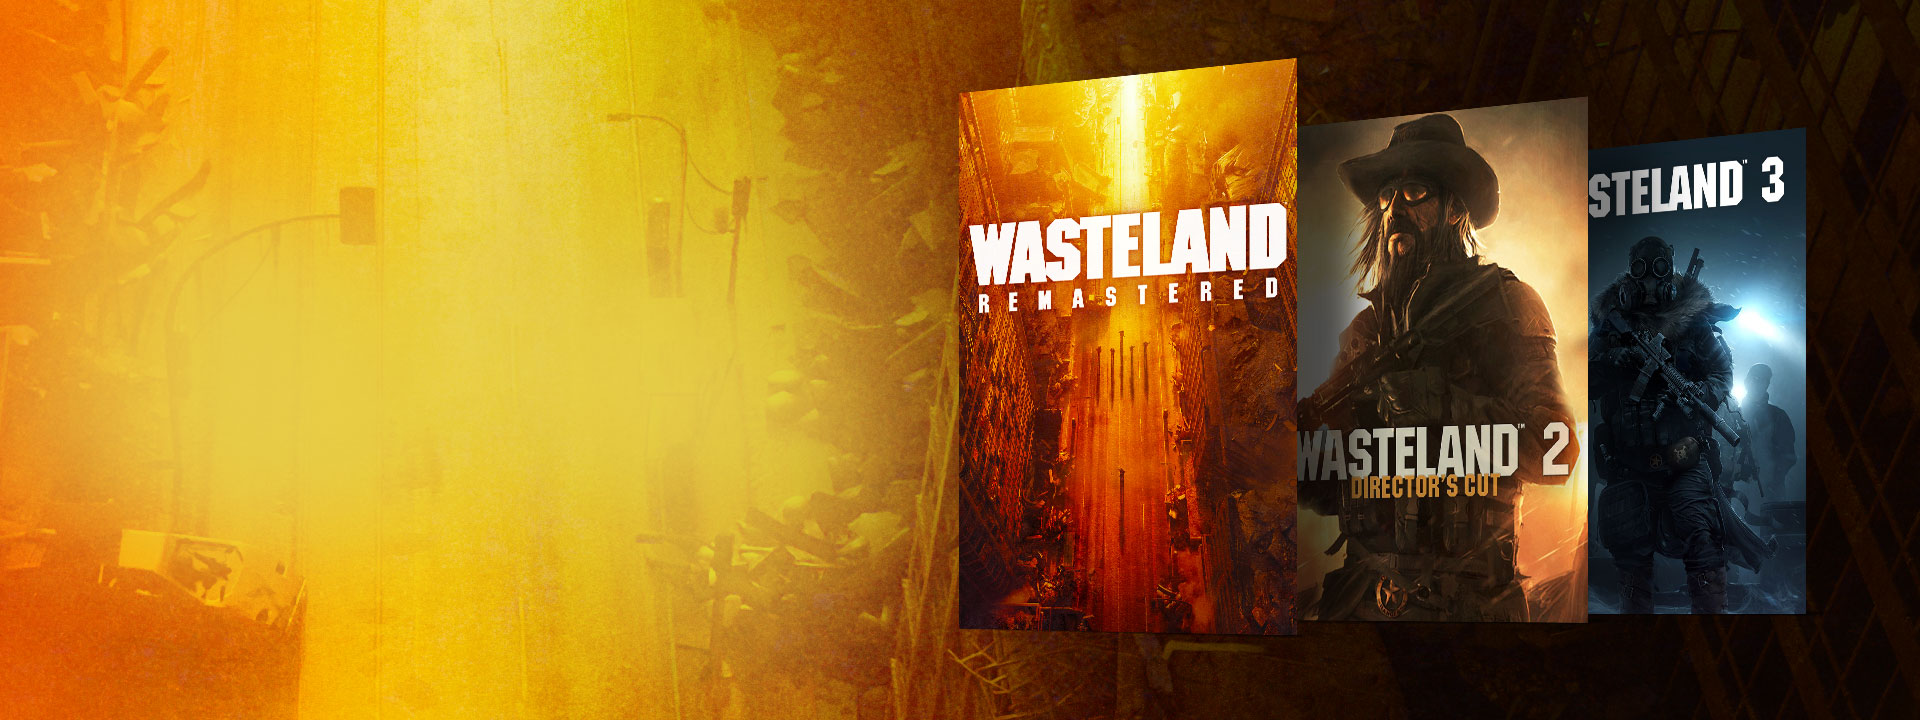 Image de la boîte de Wasteland Remastered, Wasteland 2 Director’s Cut et Wasteland 3. Un arrière-plan d’une rue abandonnée avec des teintes jaunes et orange